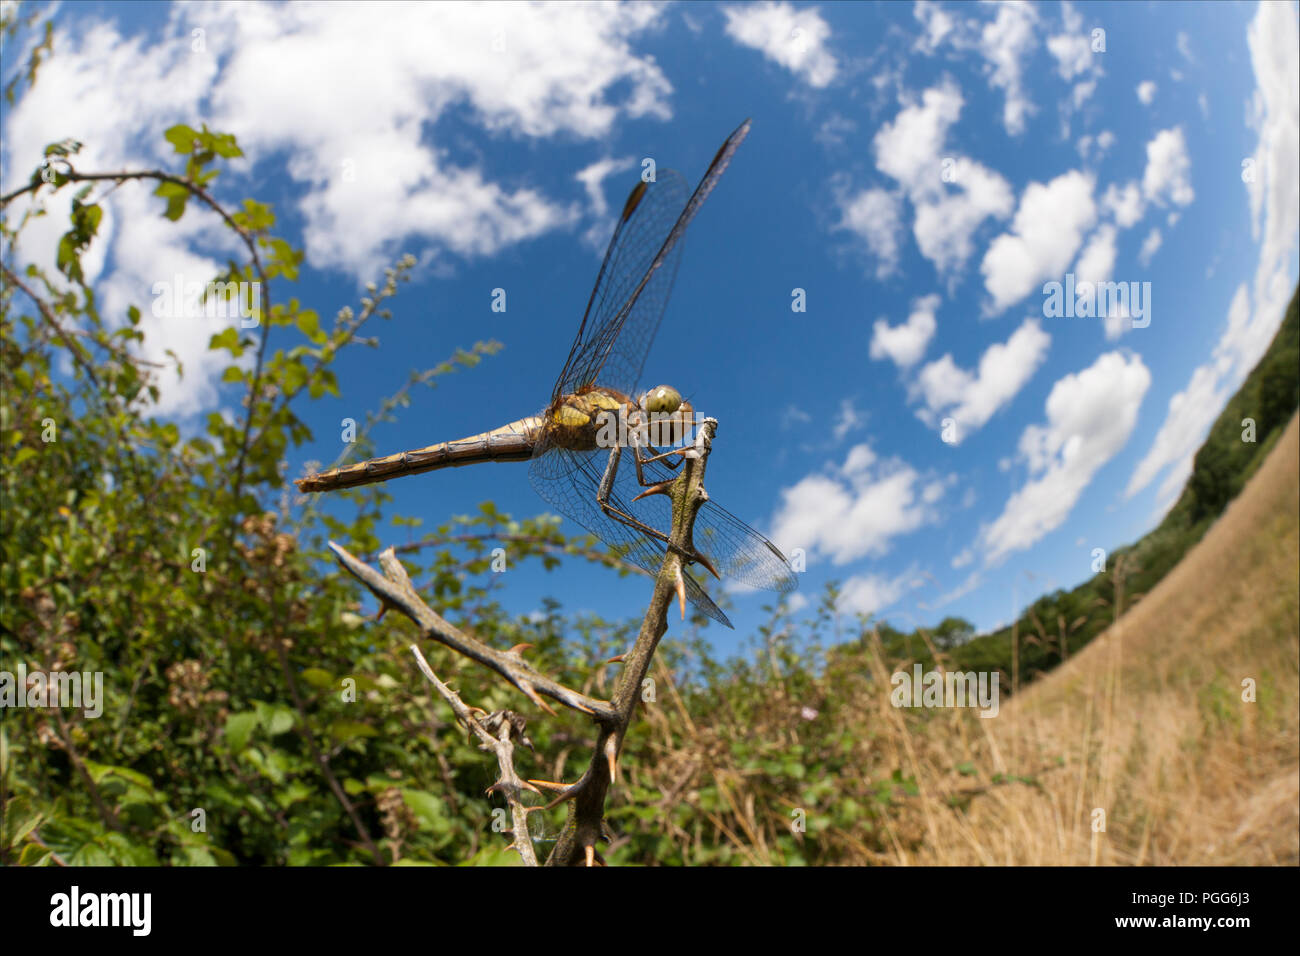 Una femmina di common darter dragonfly, Sympetrum striolatum, appollaiato accanto a una siepe e fotografati in una giornata di sole con un 15mm fish eye lente. Fare del nord Foto Stock